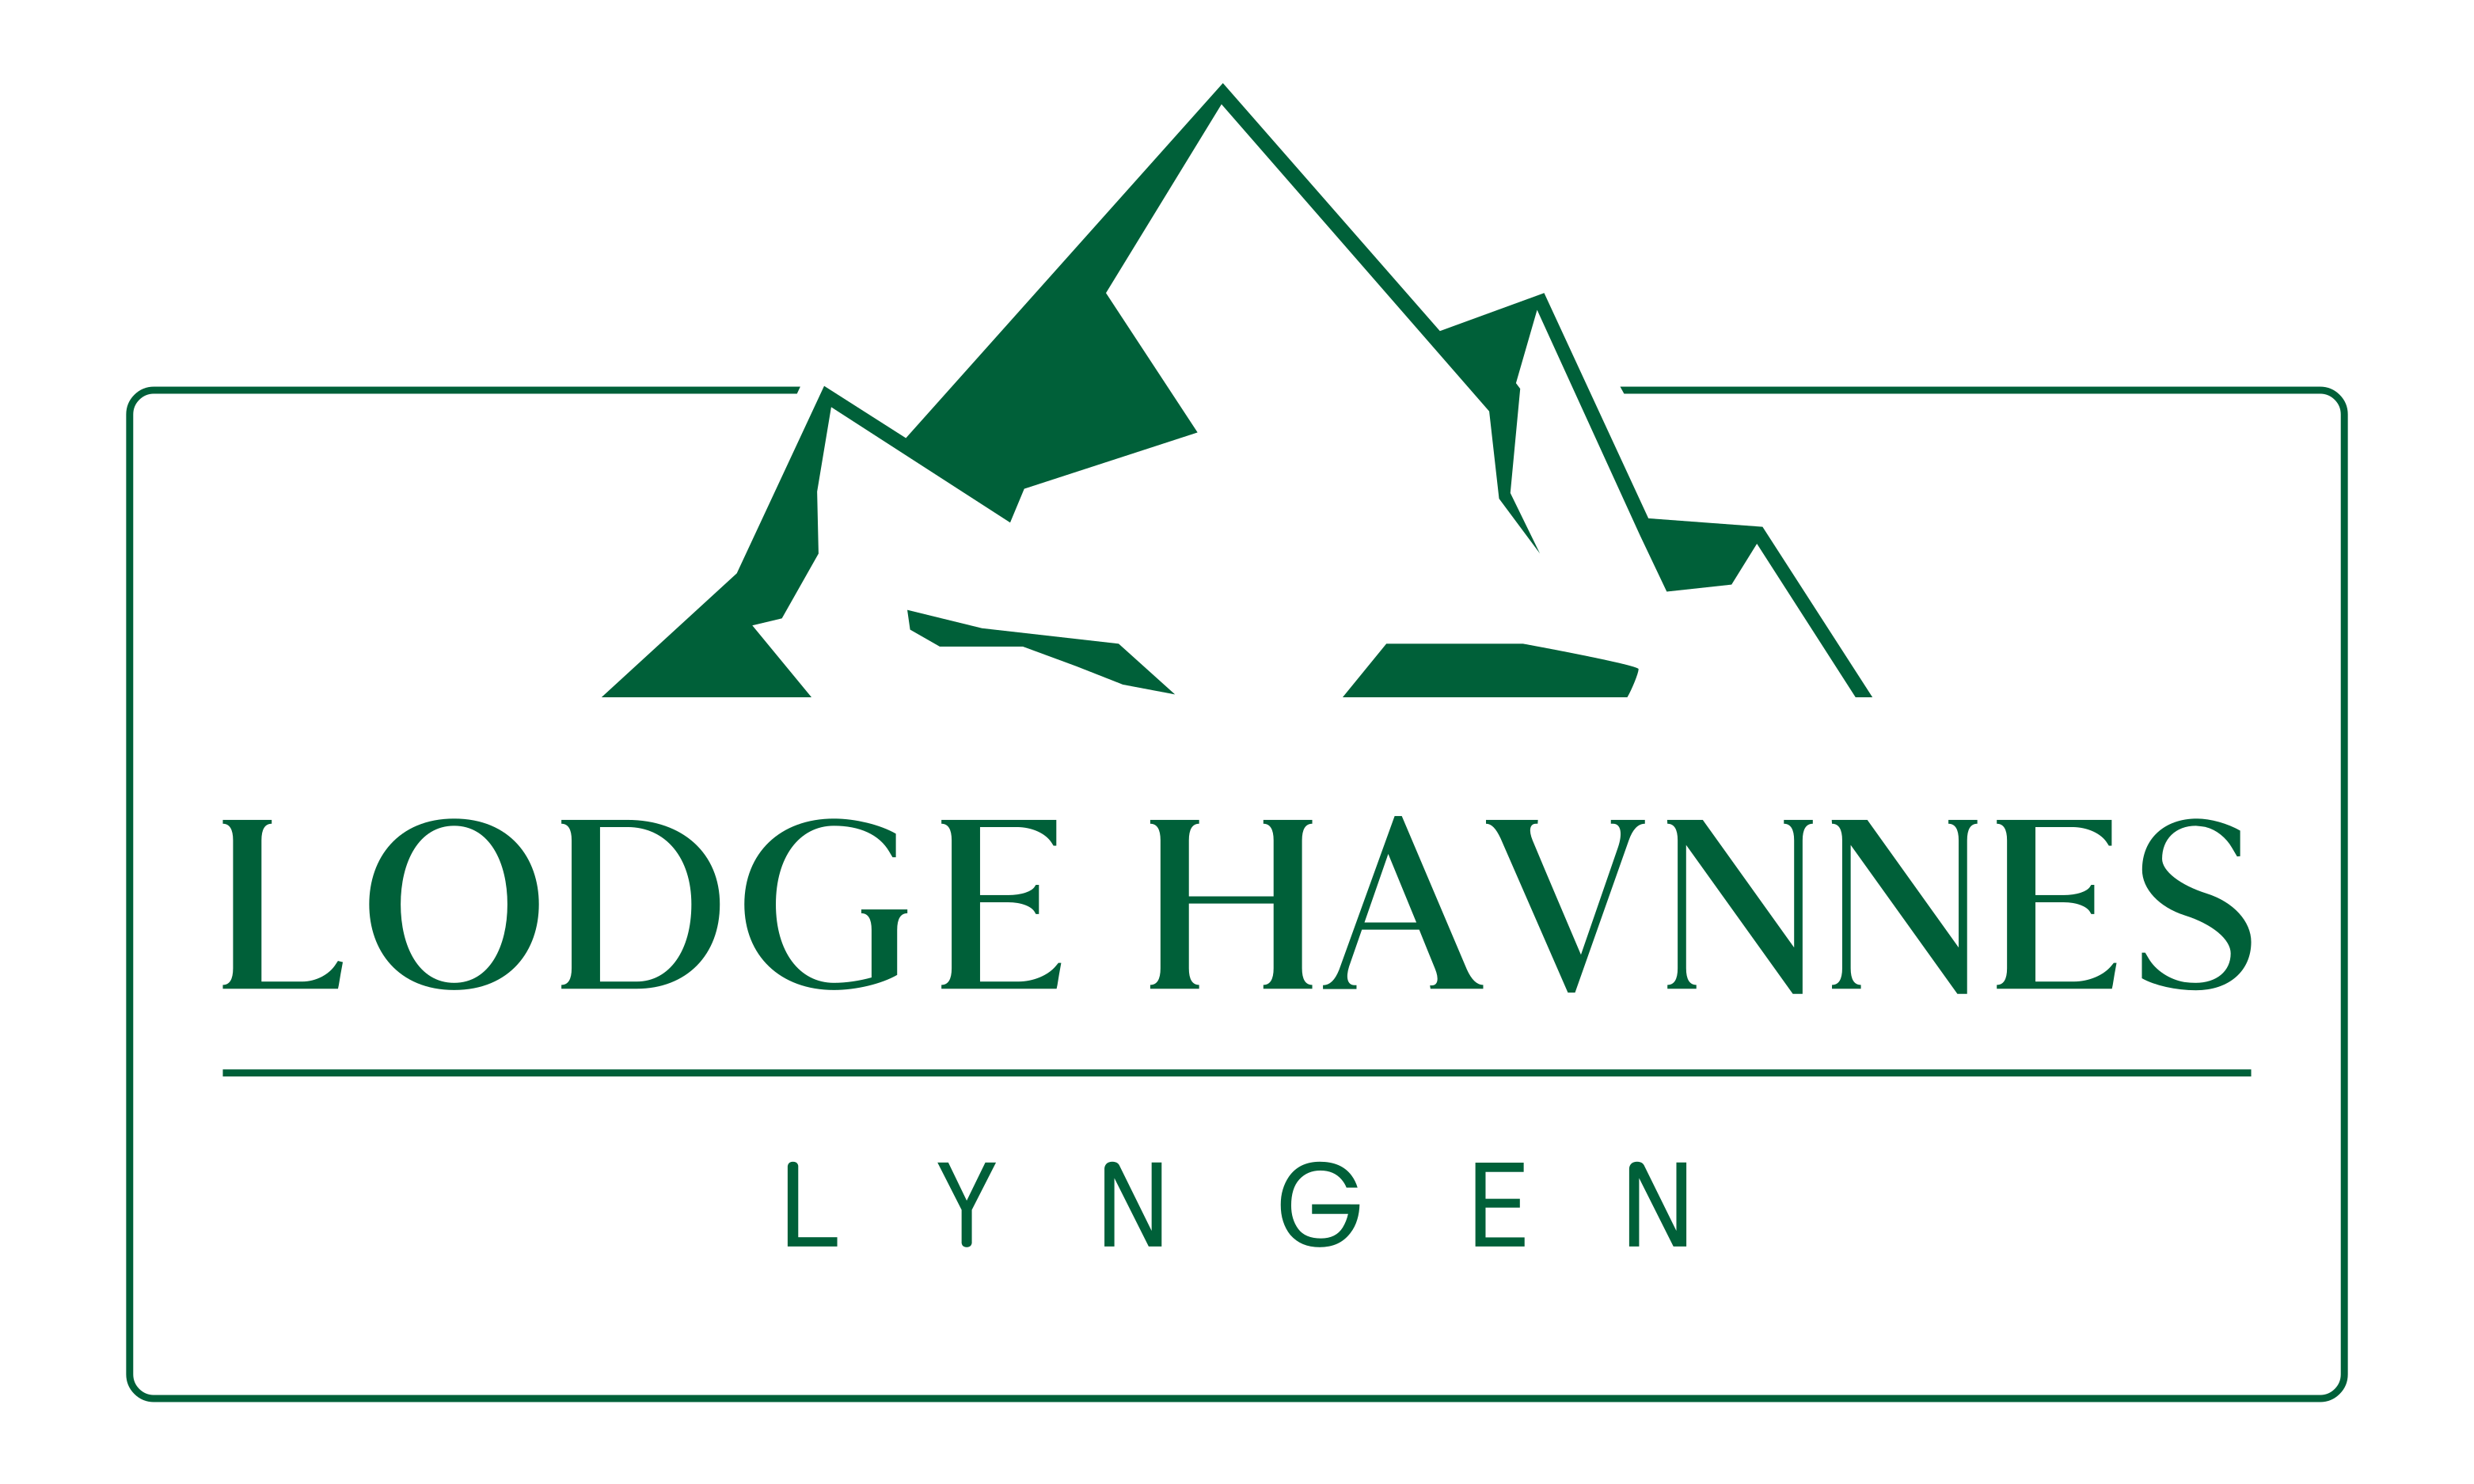 Lodge Havnnes - Lyngen